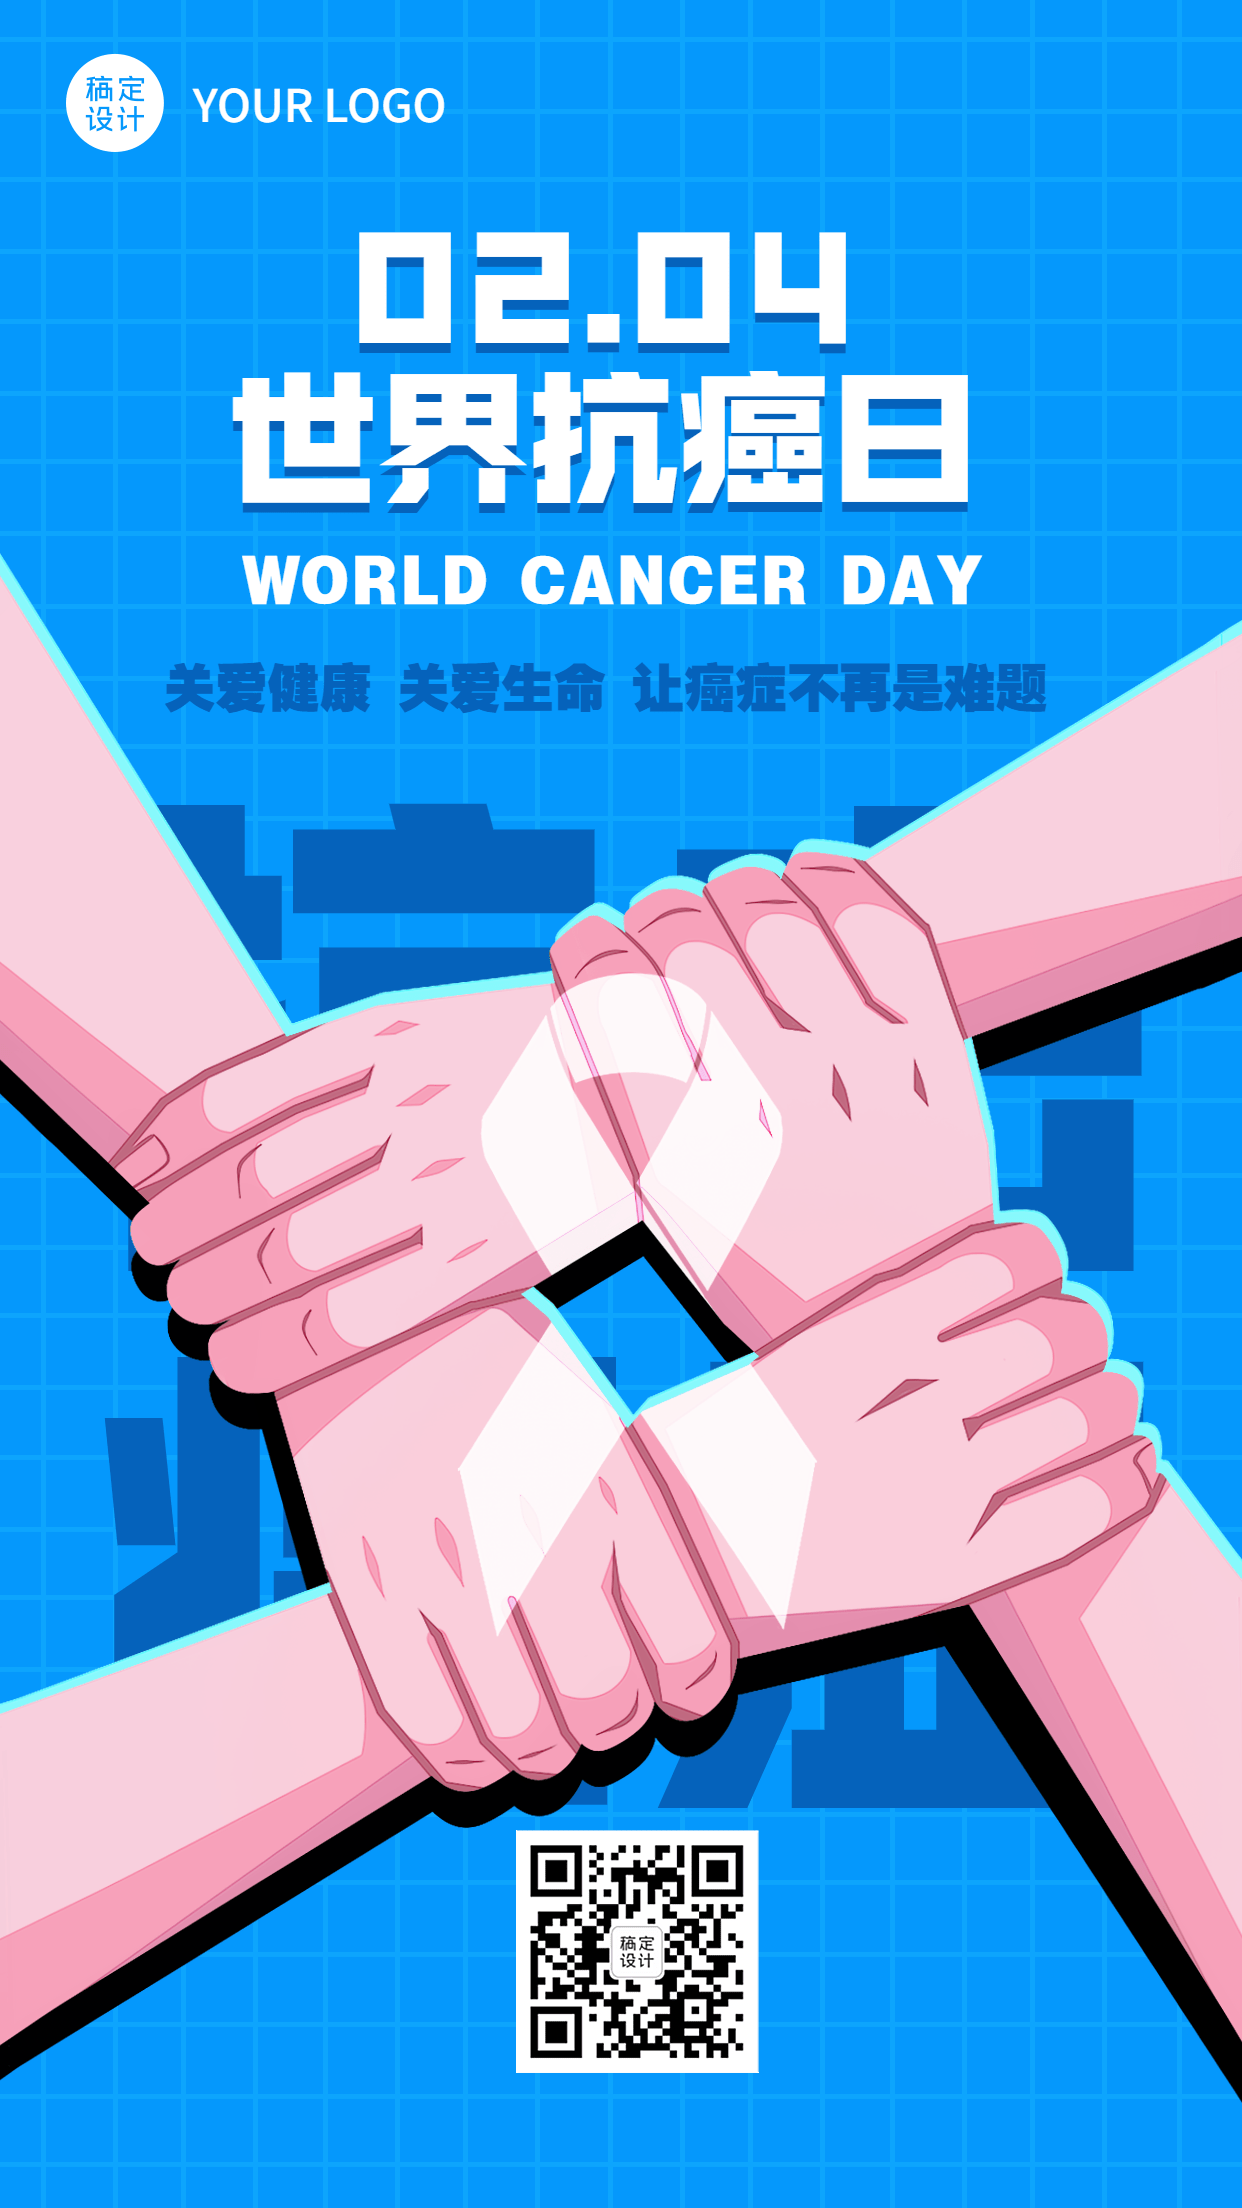 2.4世界抗癌日节日宣传简约手绘手机海报预览效果